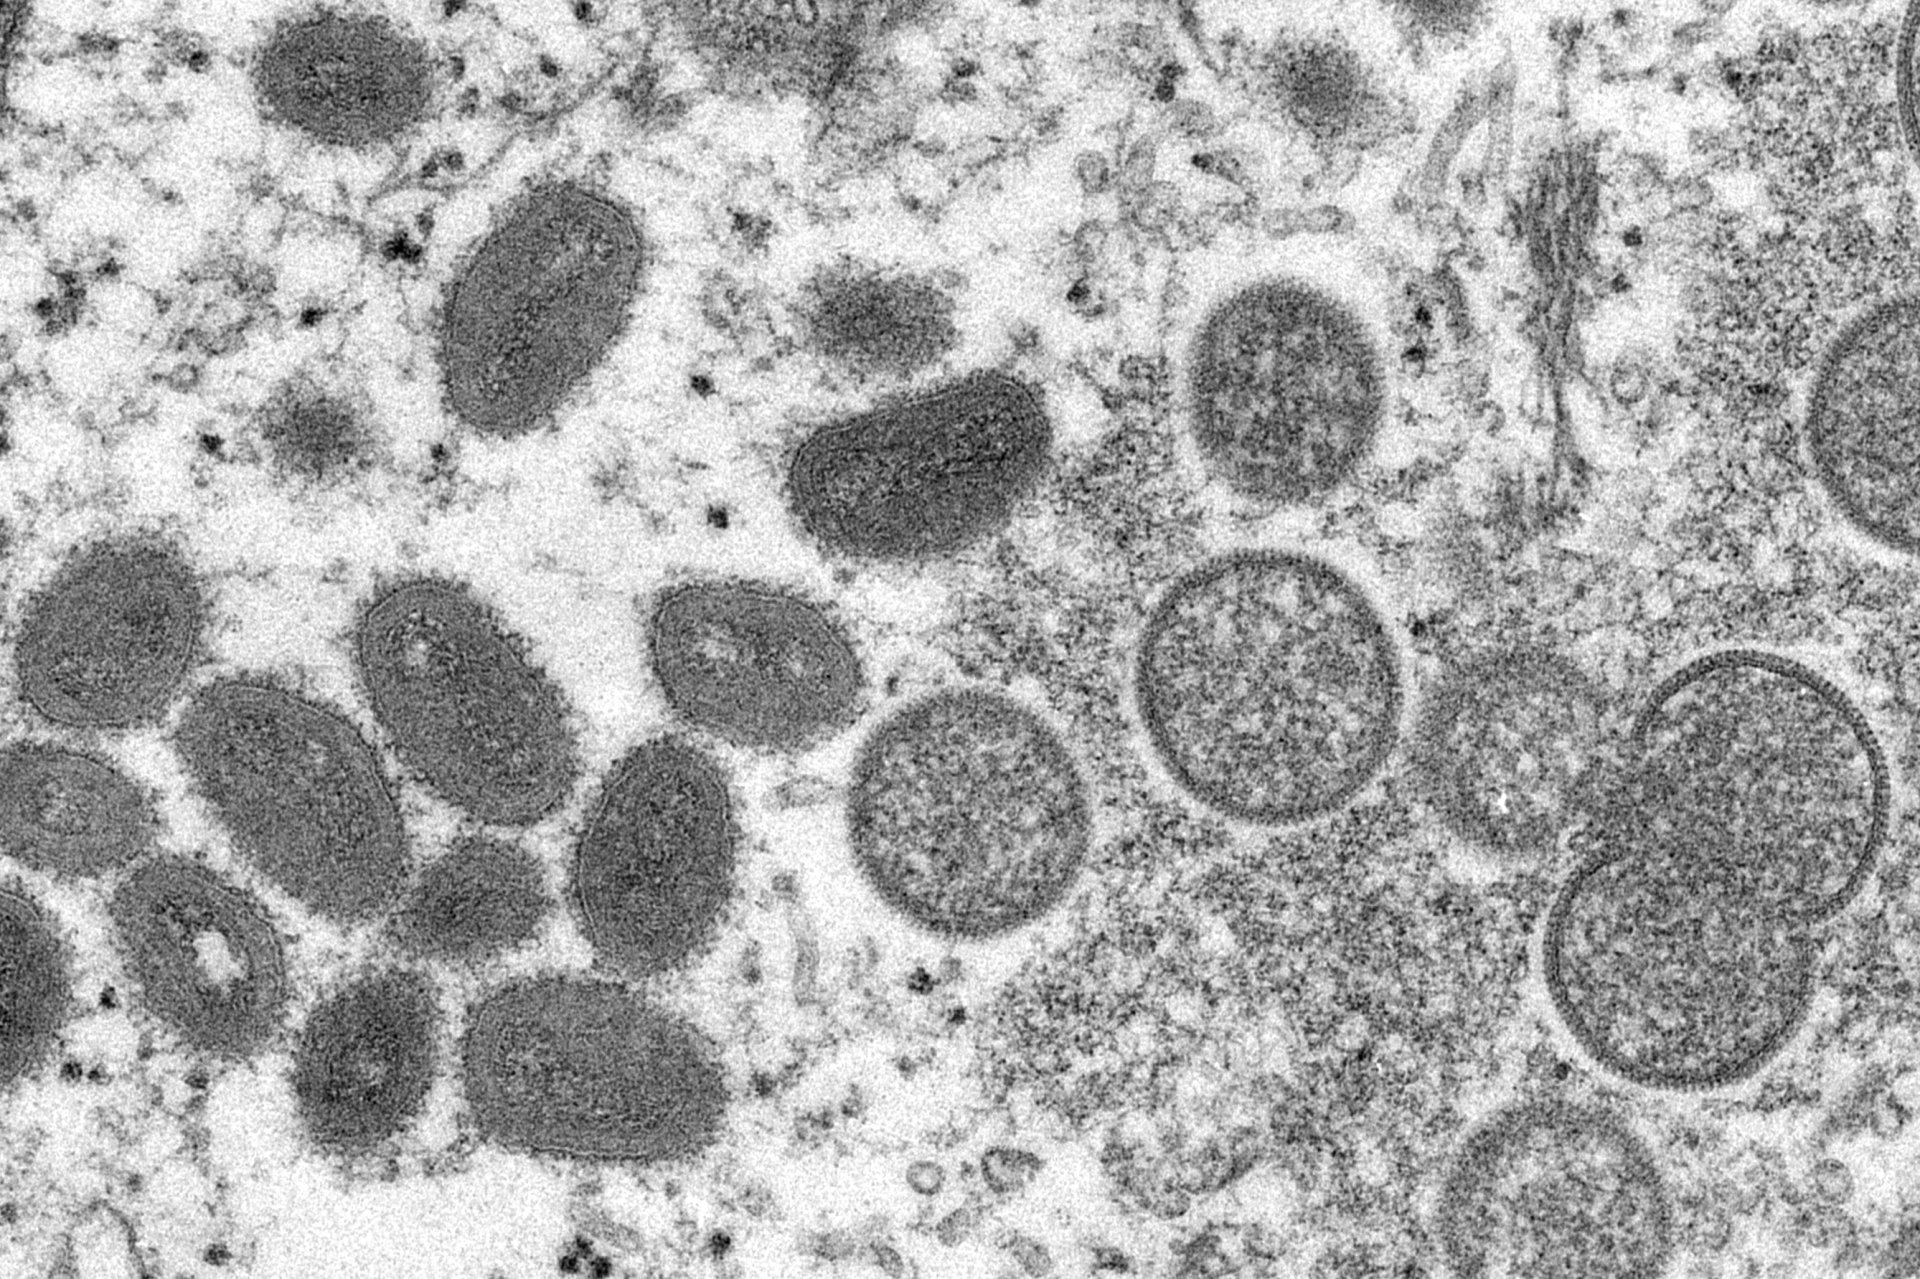 Изображение с електронен микроскоп от 2003 г., предоставено от Центровете за контрол и превенция на заболяванията, показва зрели вириони на маймунска шарка с овална форма, леви и сферични незрели вириони, вдясно, получени от проба от човешка кожа